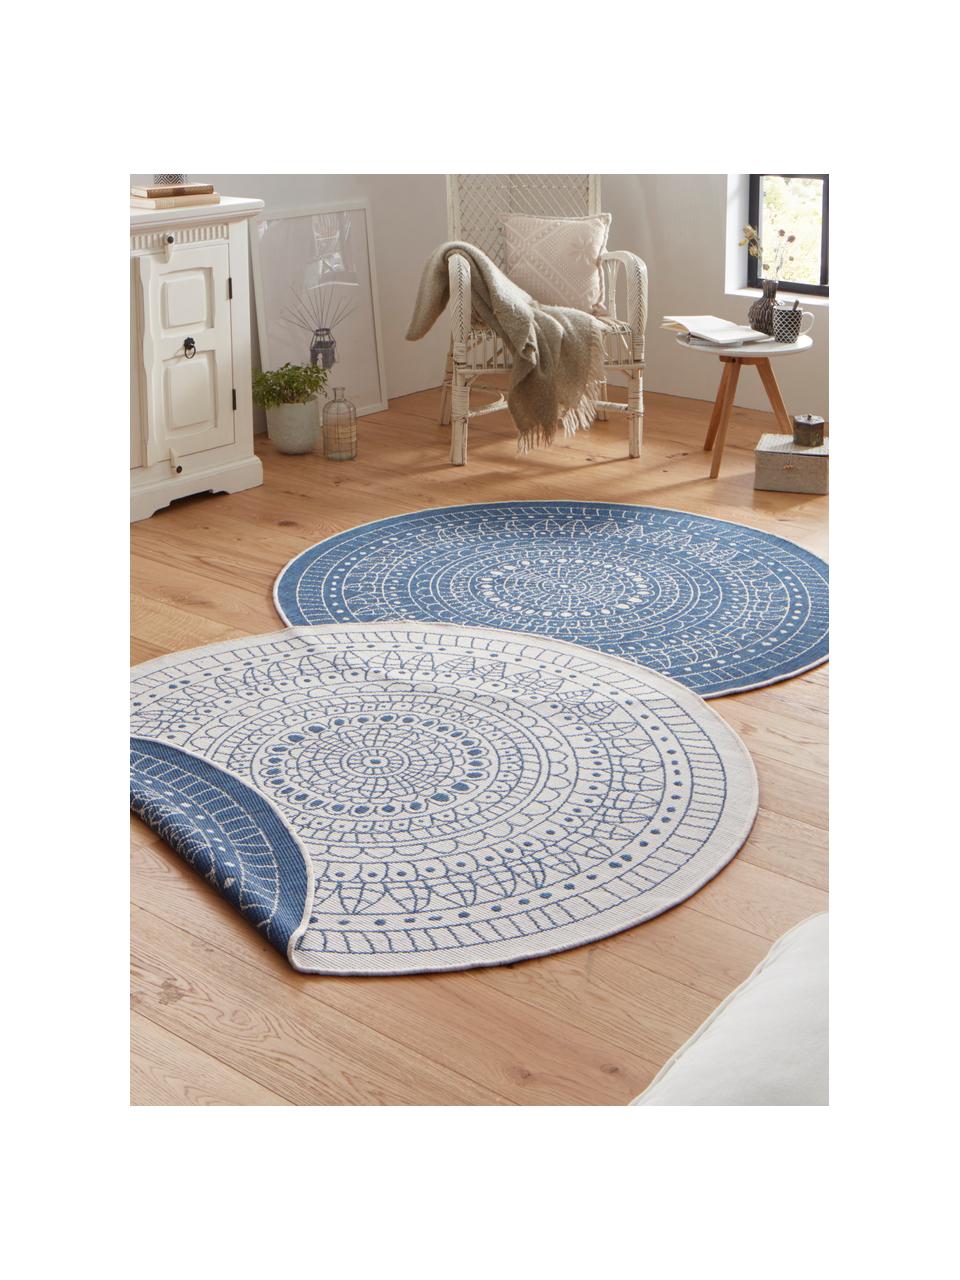 Okrúhly vzorovaný obojstranný koberec do interiéru/exteriéru Porto, 100 % polypropylén, Modrá, krémová, Ø 200 cm (veľkosť L)